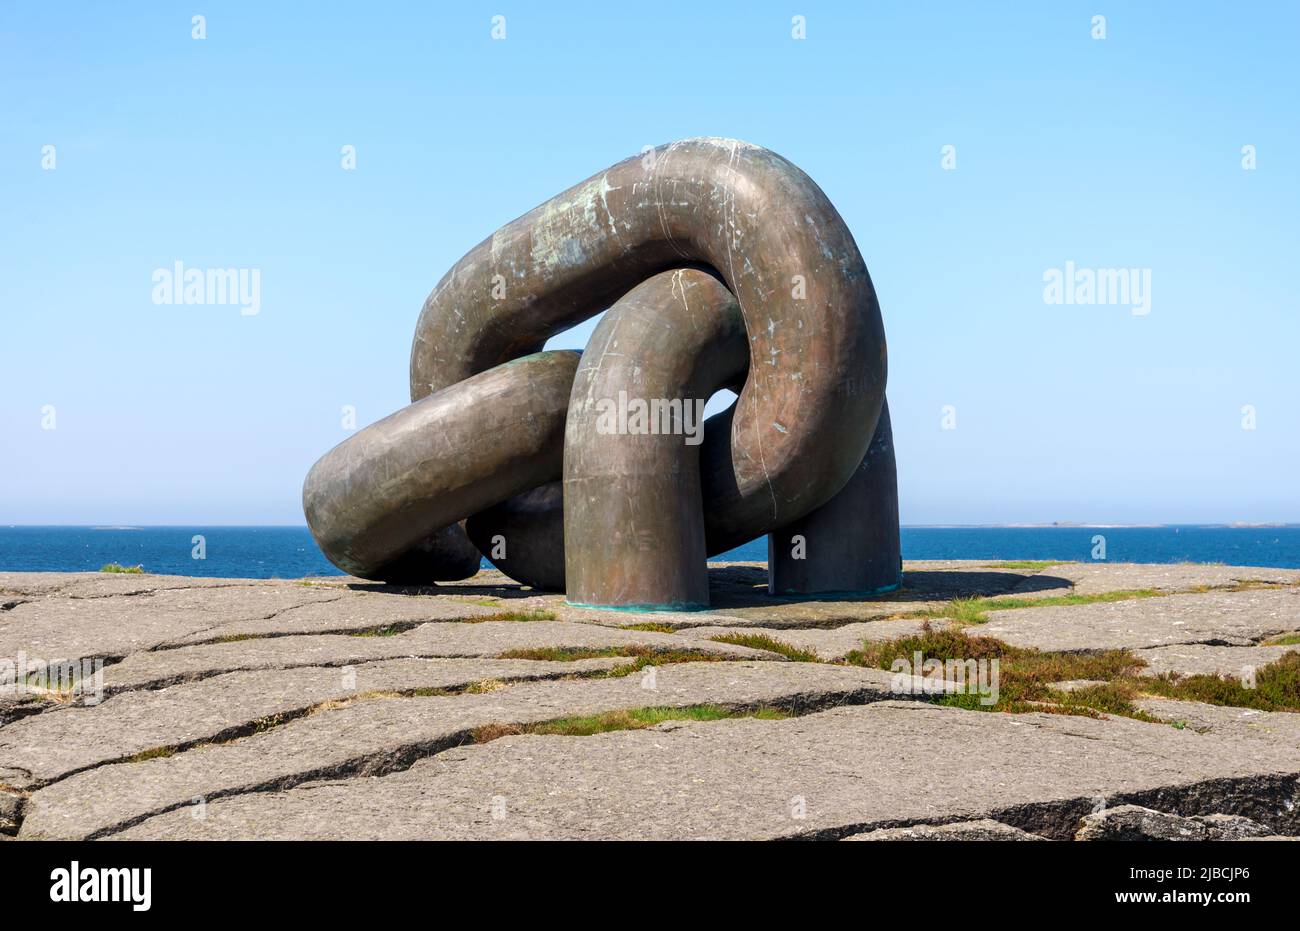 Brutt Lenke or Broken Chain large monument in memory of offshore oil rig Alexander Kjelland accident, Stavanger, Norway, May 2018 Stock Photo